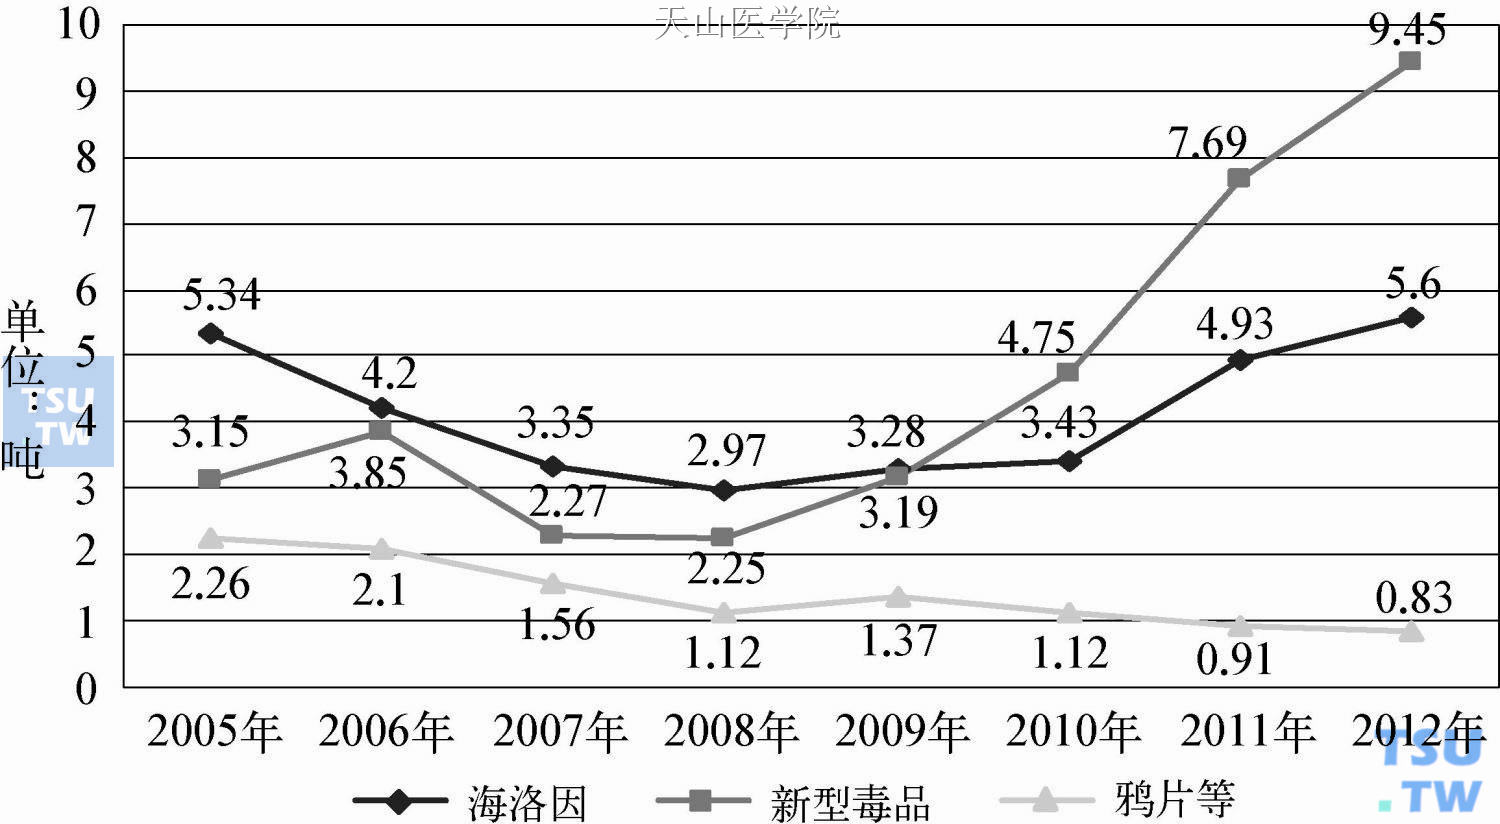 云南全省2005—2012年来缴获各类毒品数量